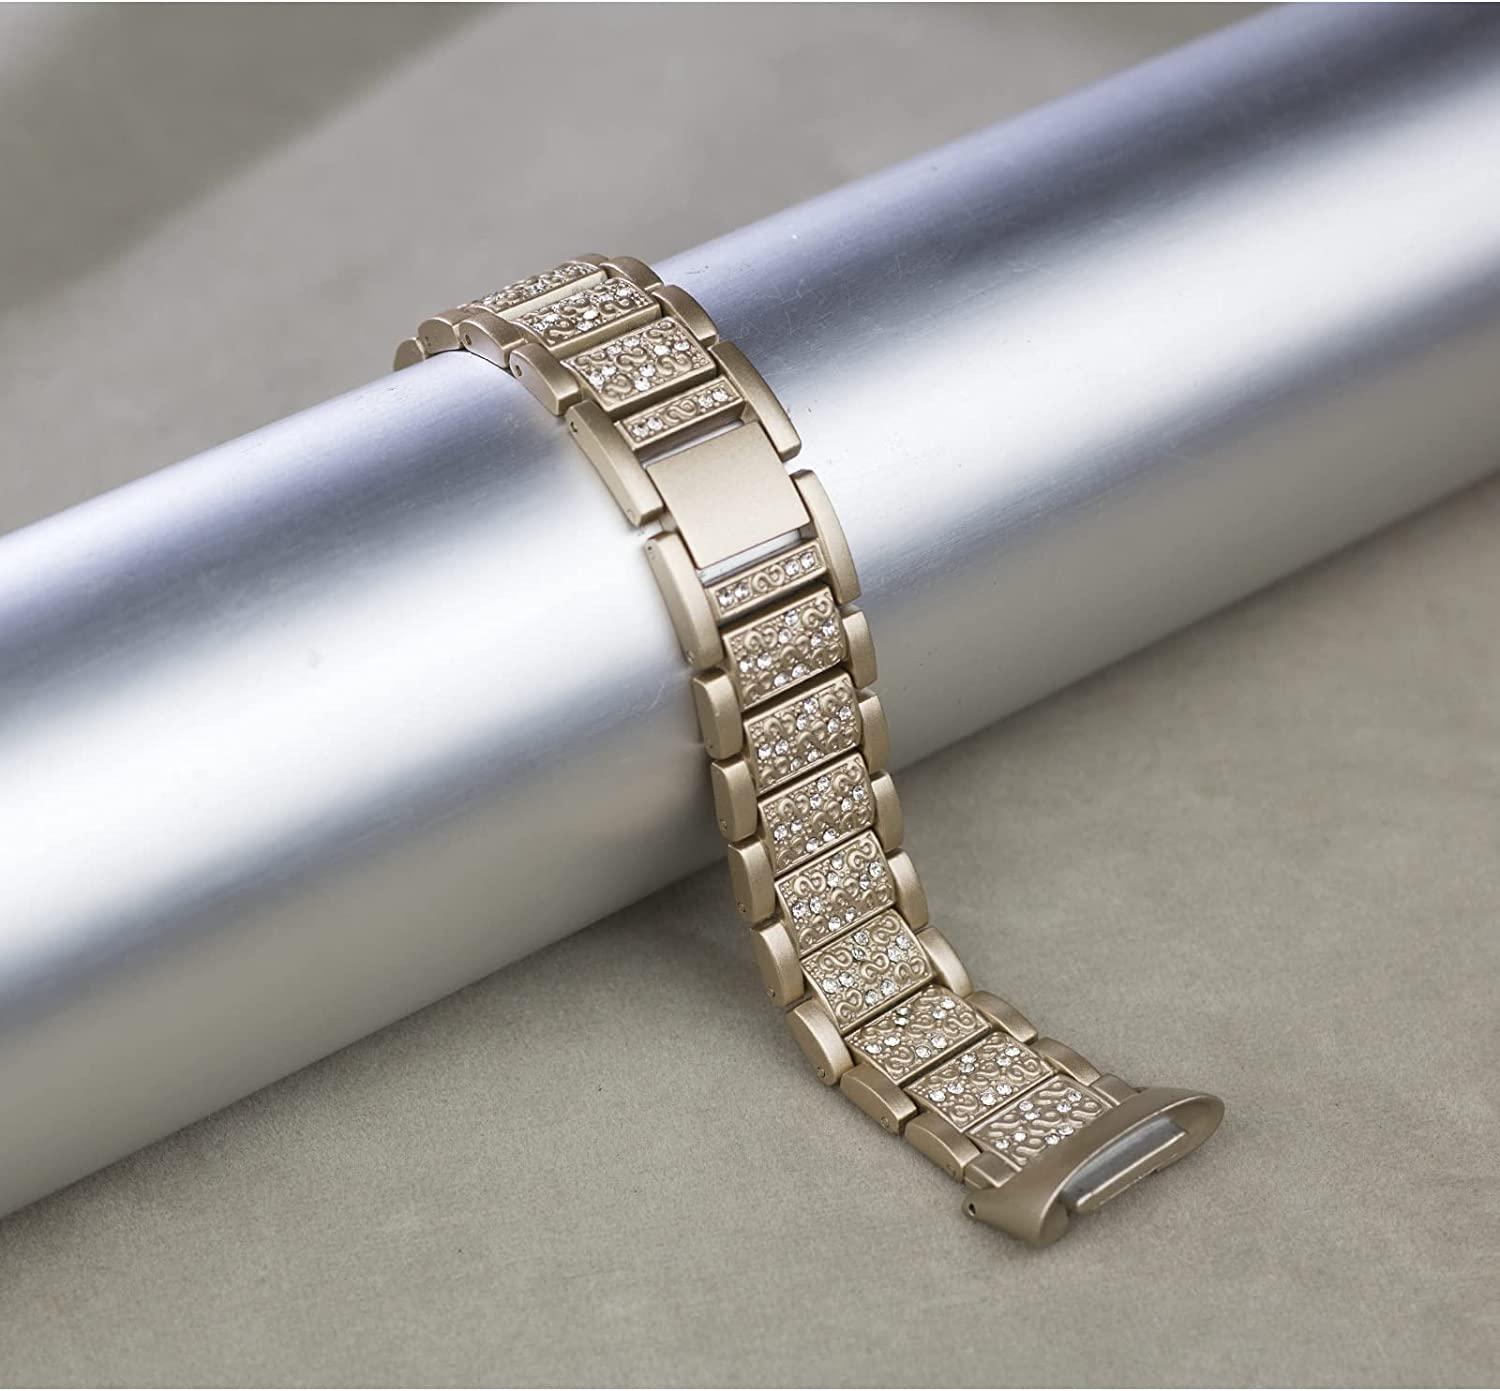 Bracelet iMoshion silicone pour Fitbit Luxe - Beige - Accessoires